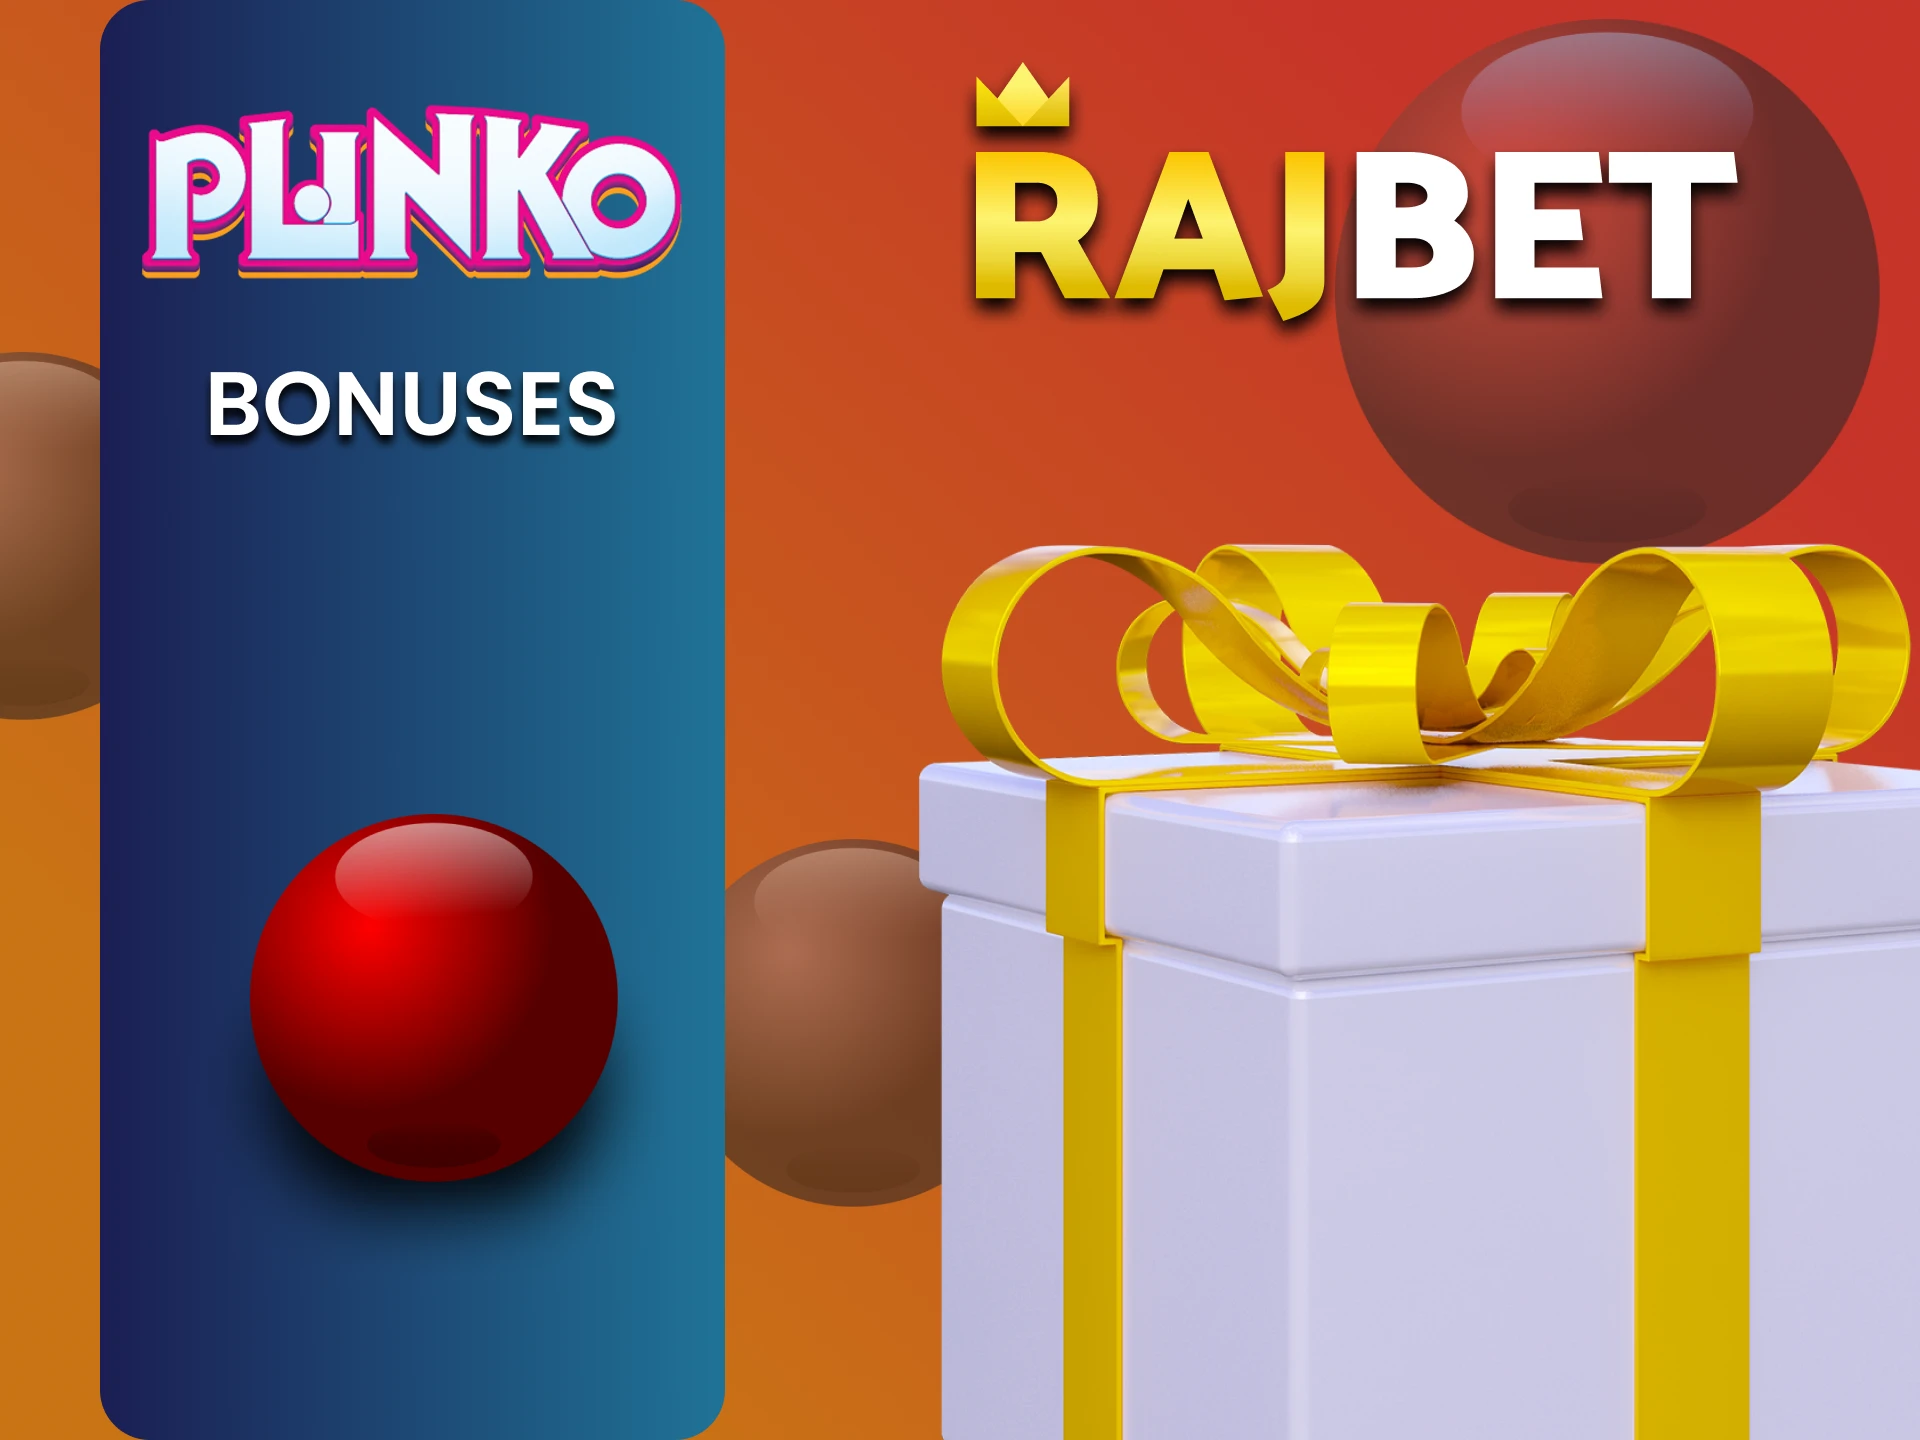 Rajbet gives bonuses for playing Plinko.